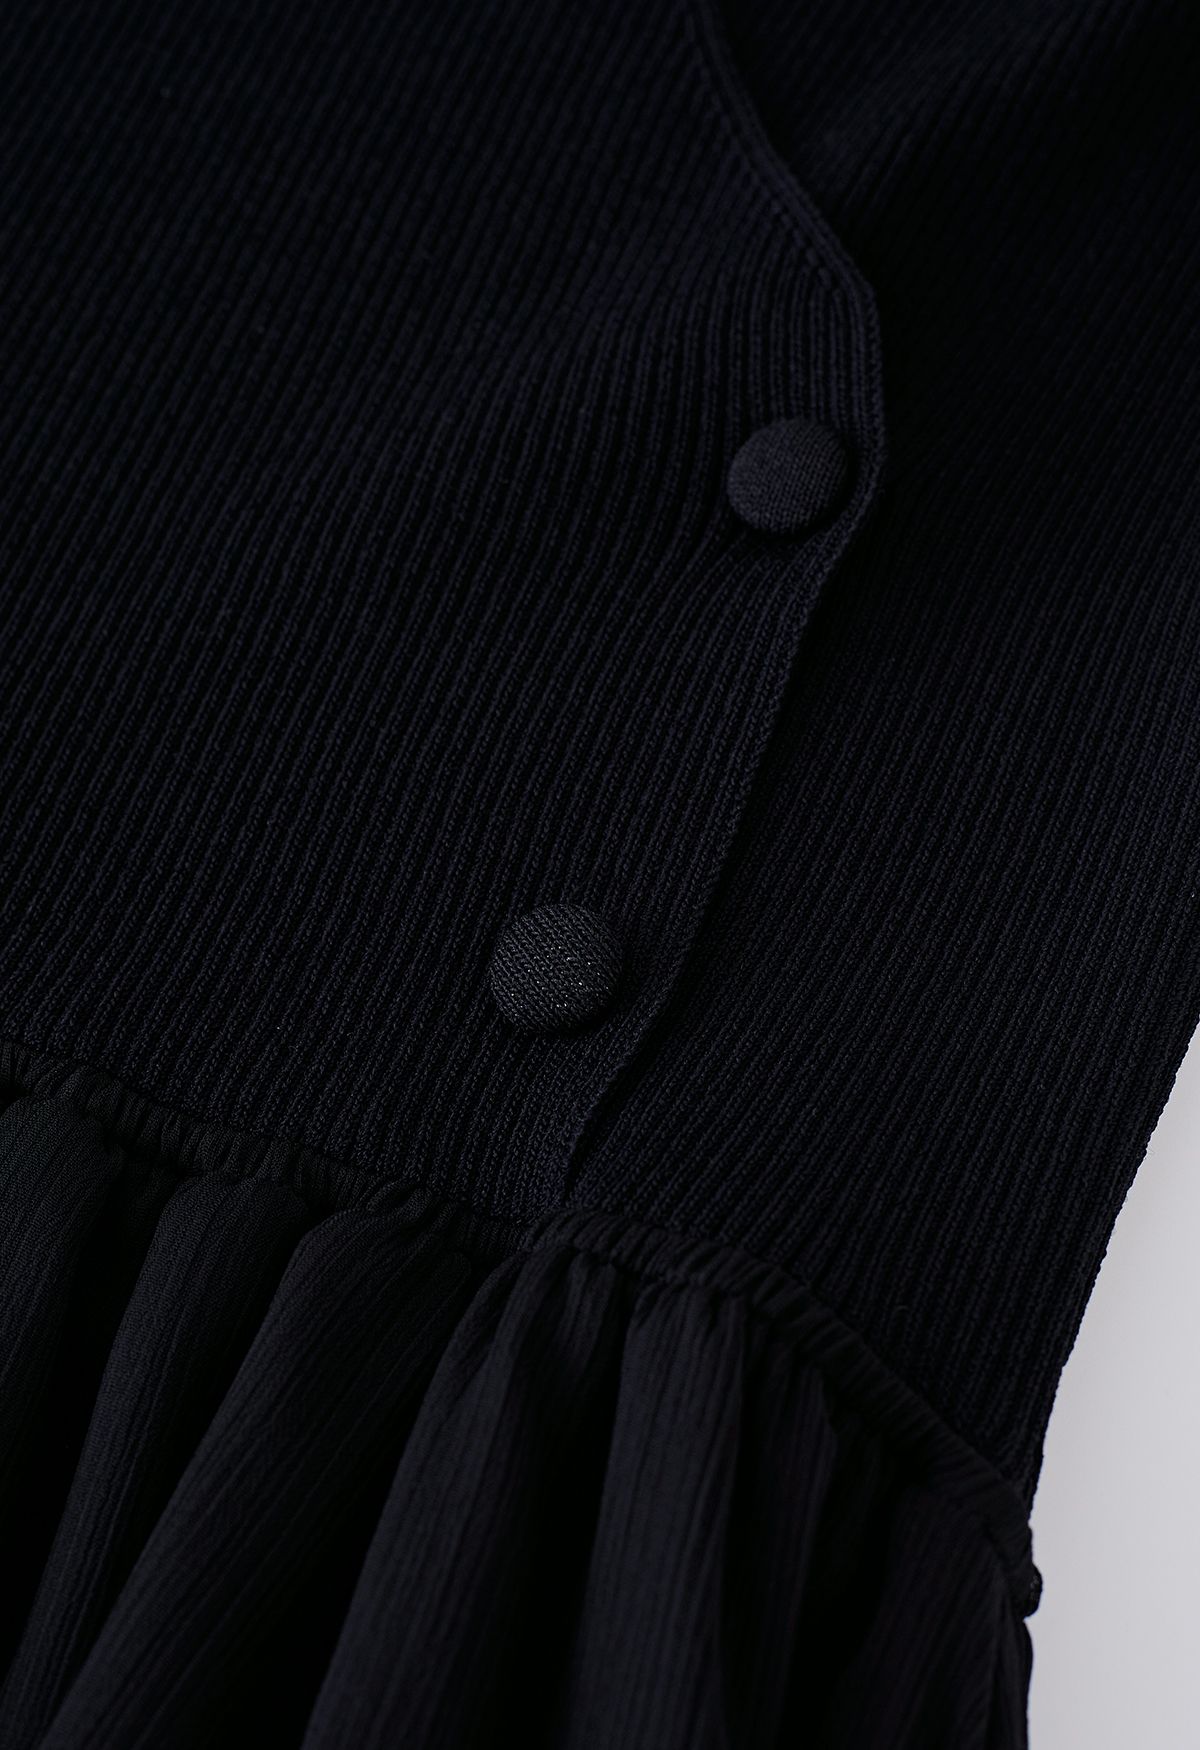 فستان شفاف متوسط الطول بياقة رسن متماسكة باللون الأسود